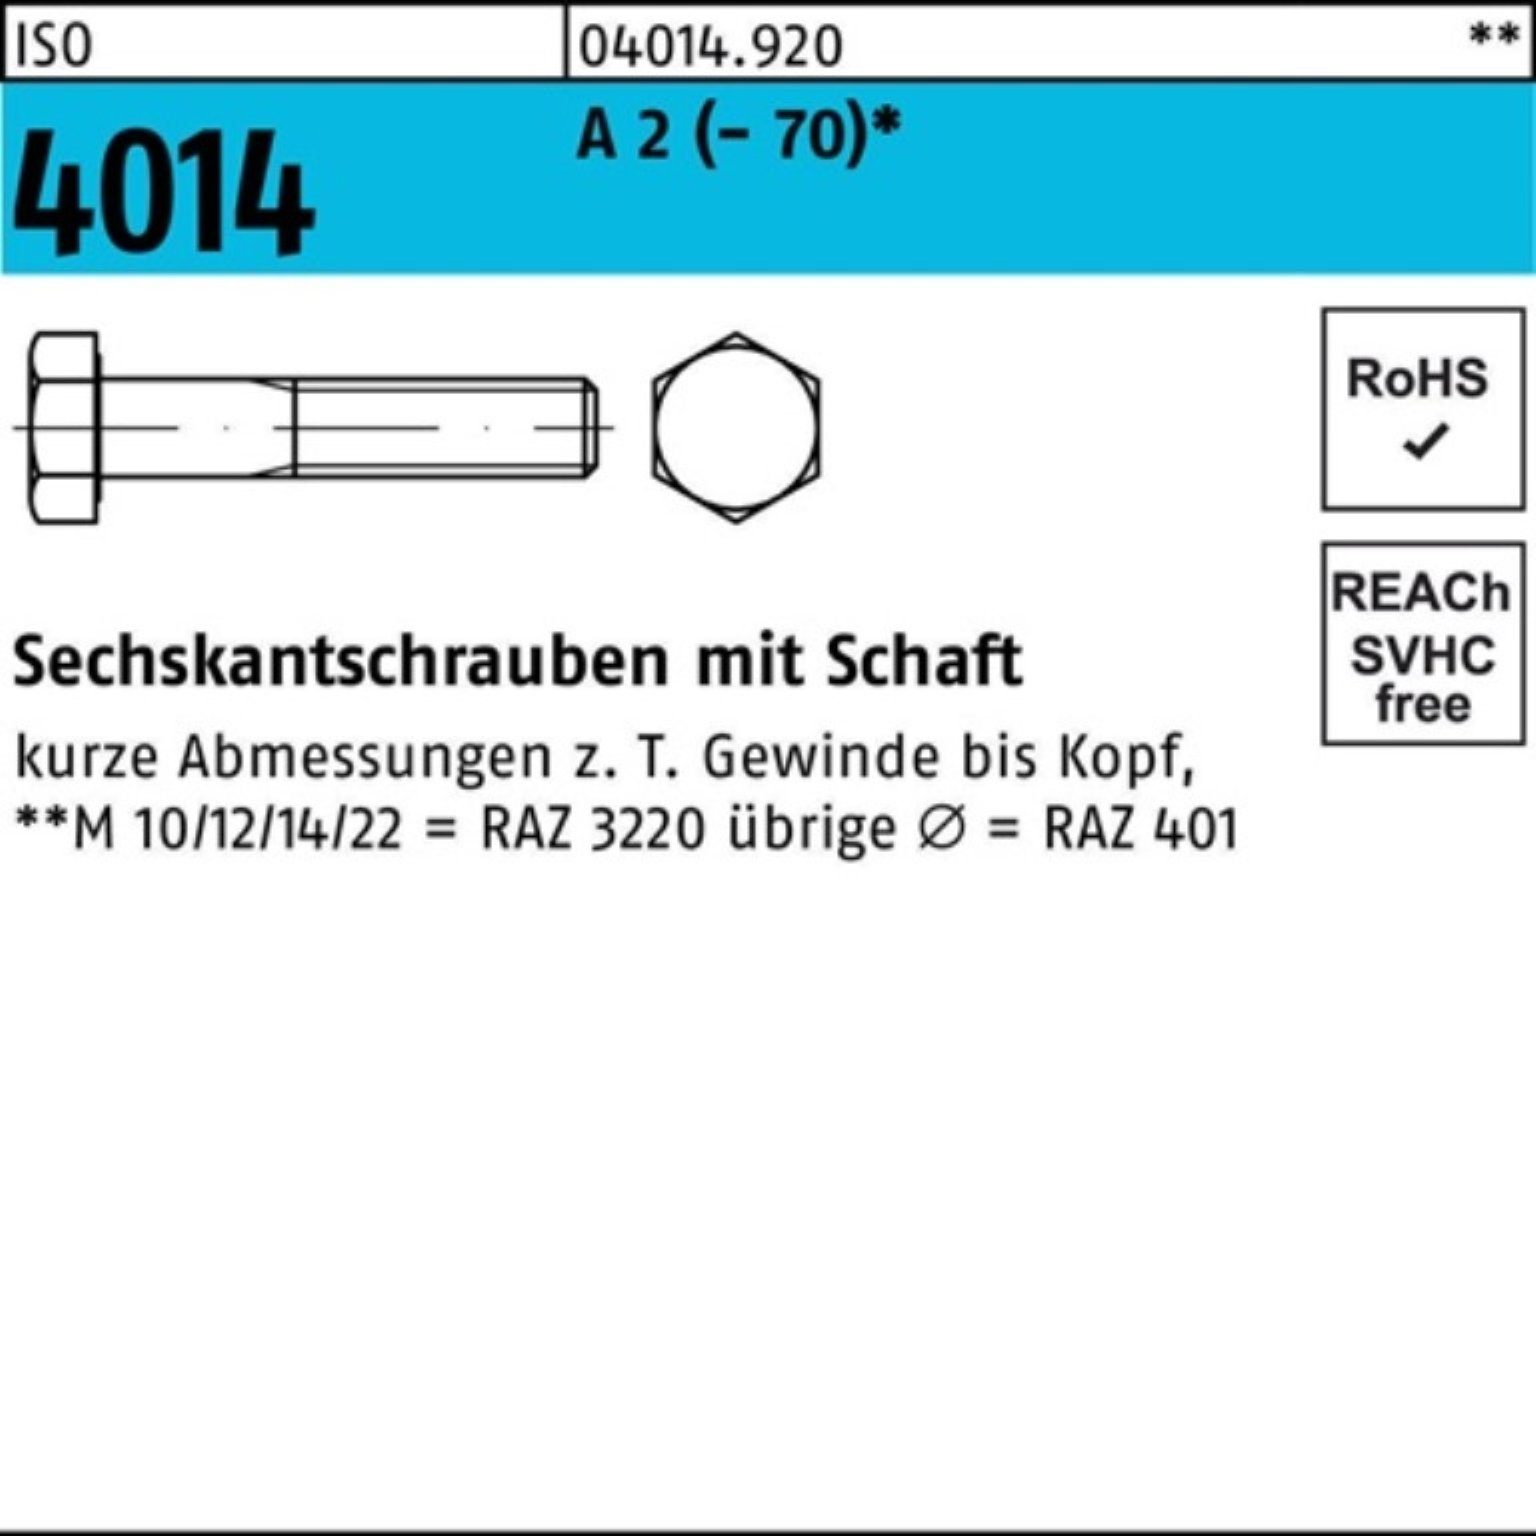 Bufab Sechskantschraube 100er Sechskantschraube 4014 Pack 2 A St Schaft (70) 85 50 ISO M10x